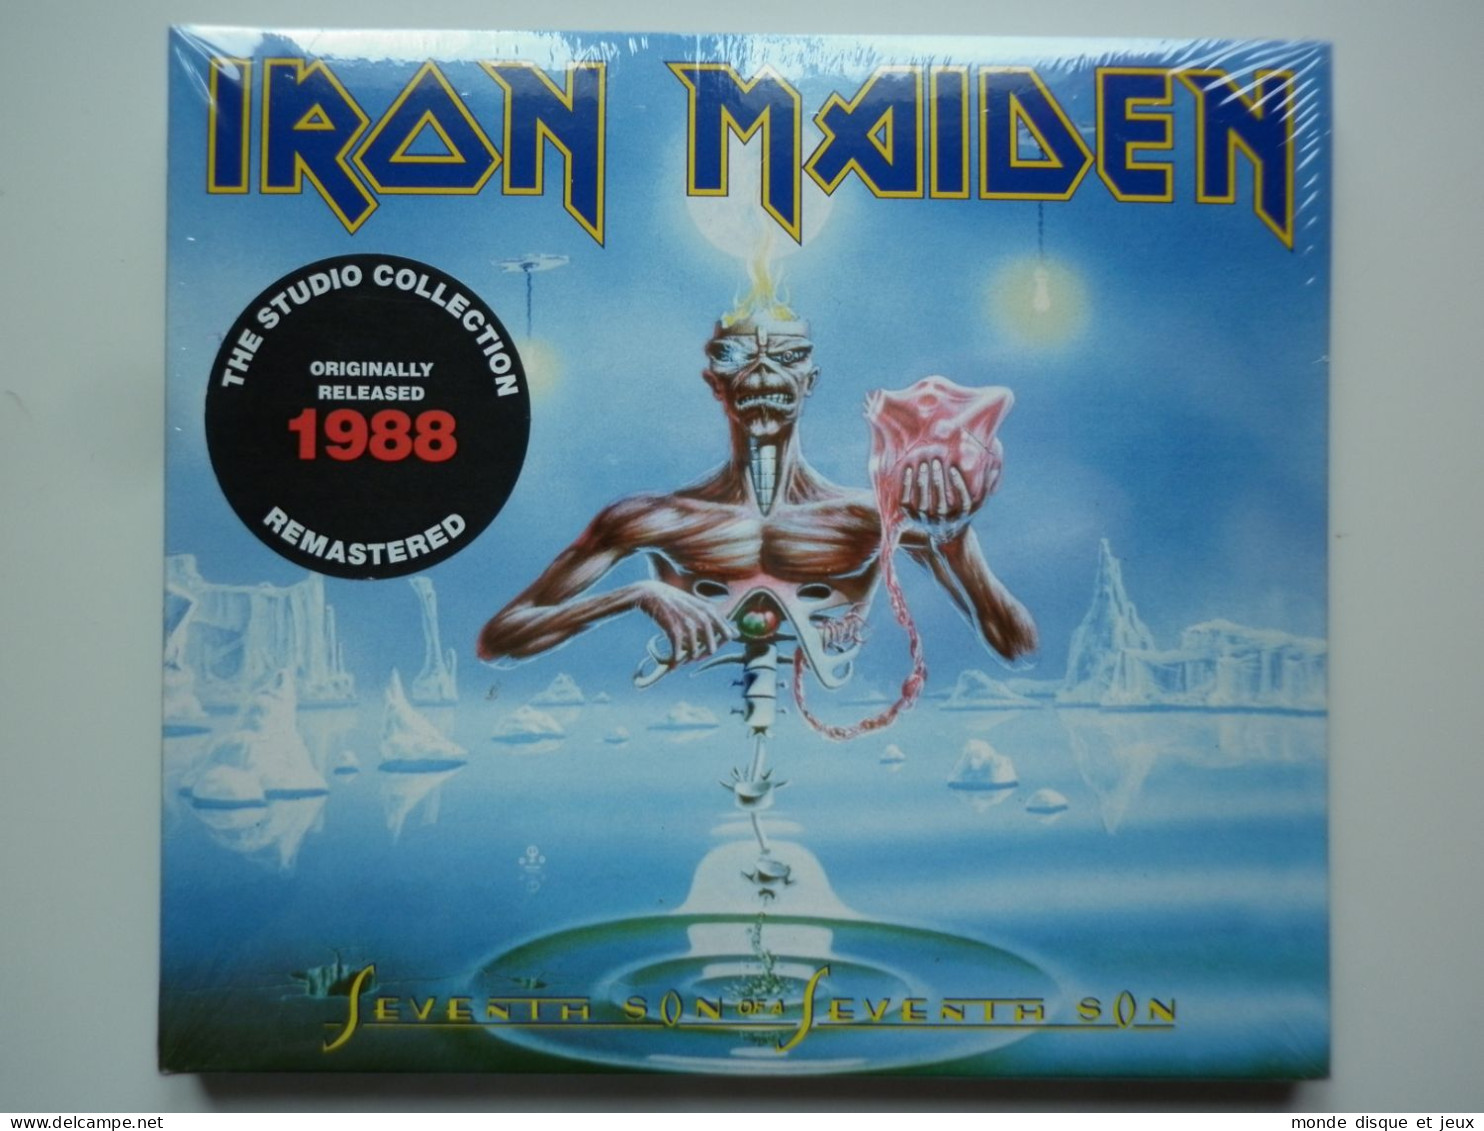 Iron Maiden Cd Album Digipack Seventh Son Of A Seventh Son - Otros - Canción Francesa